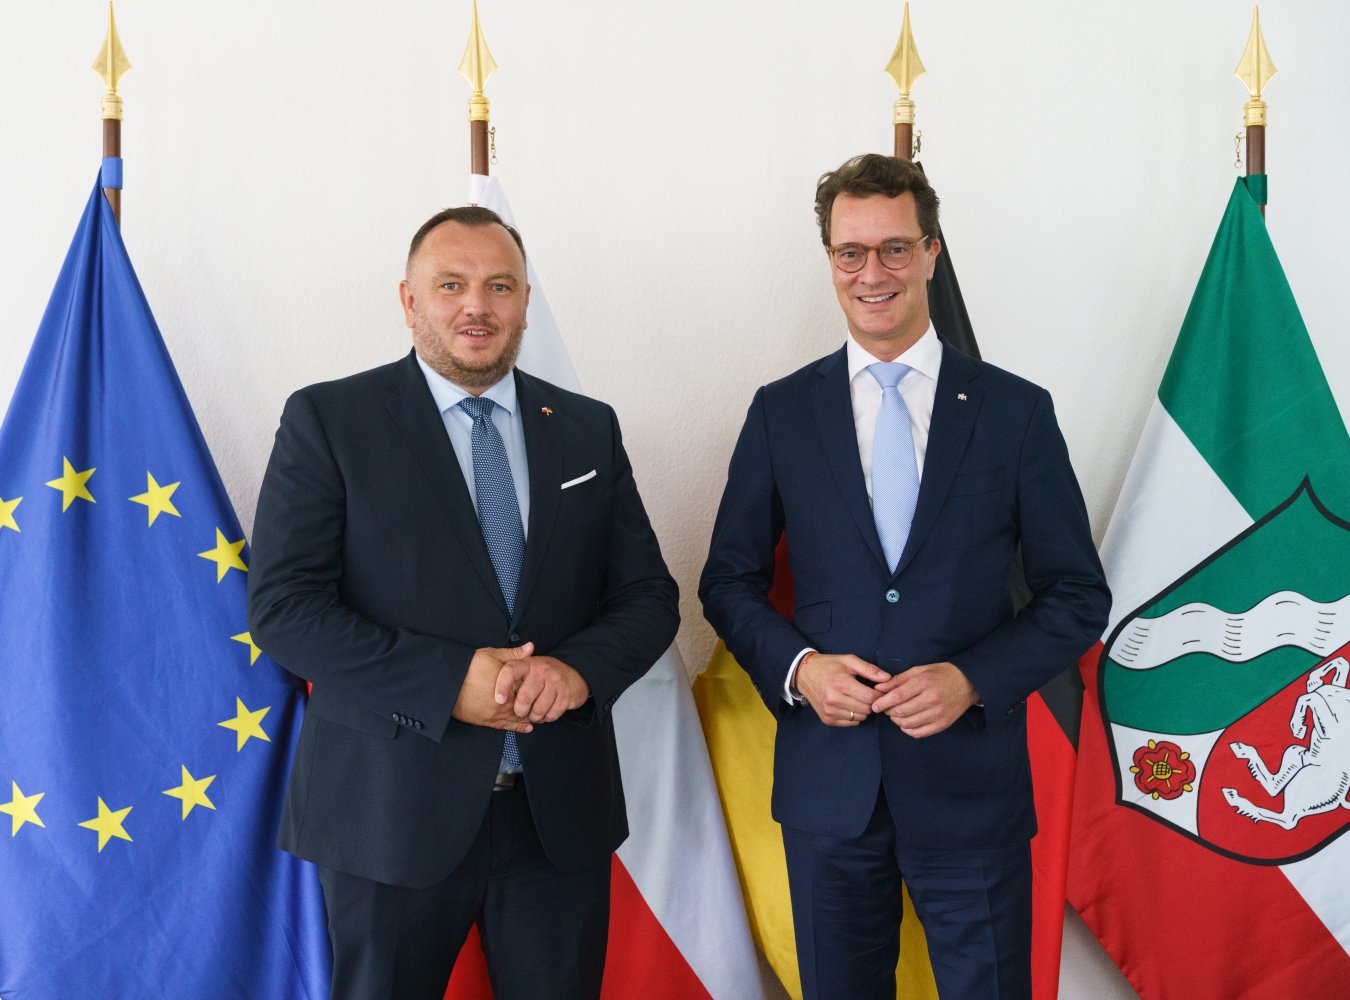 Ministerpräsident Hendrik Wüst empfängt den Marschall der polnischen Woiwodschaft Schlesien